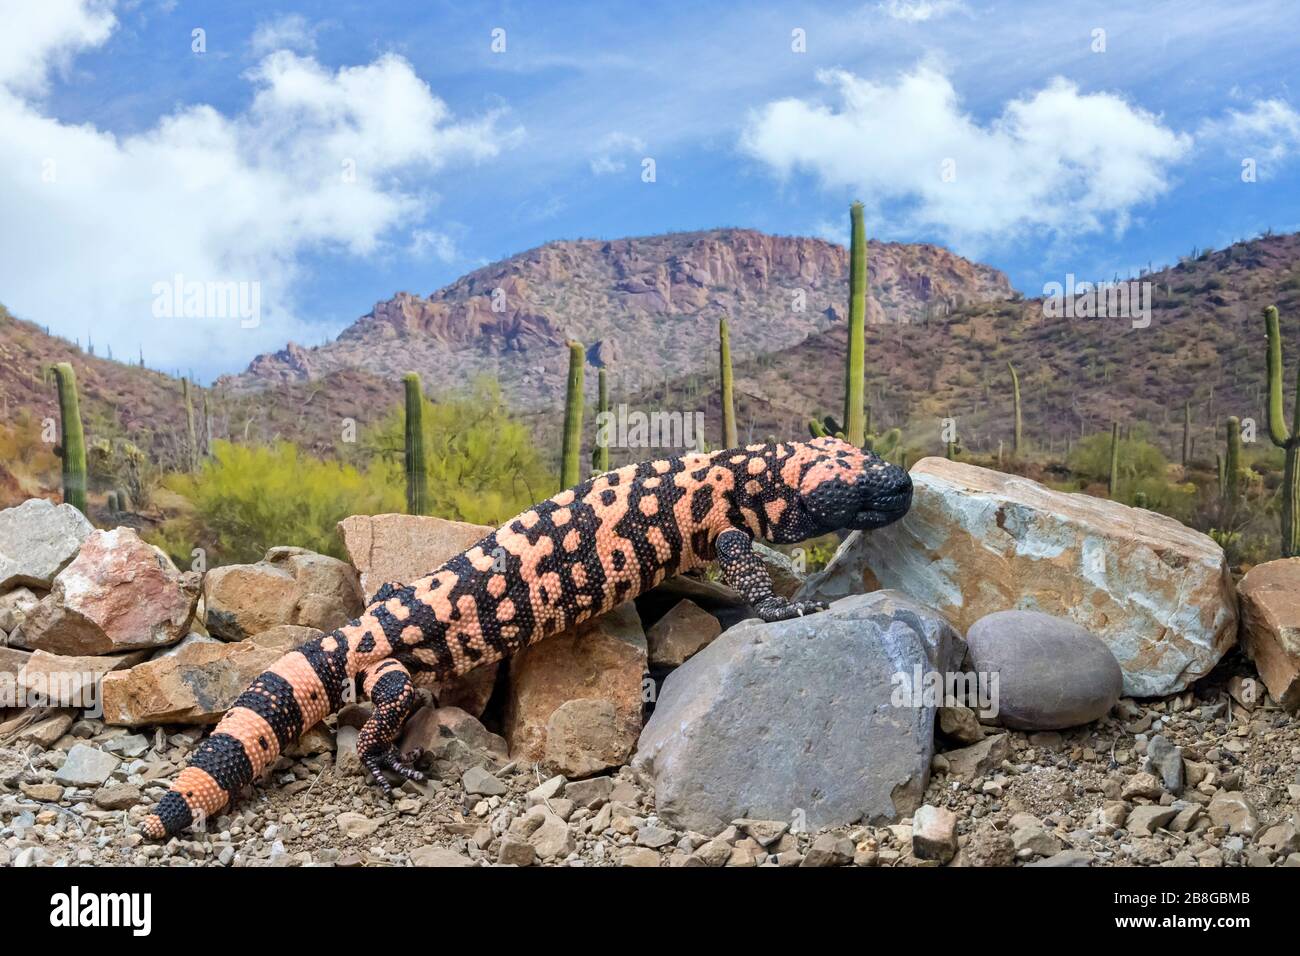 Gila Monster escalade Rocks à travers le désert de l'Arizona Photo Stock -  Alamy